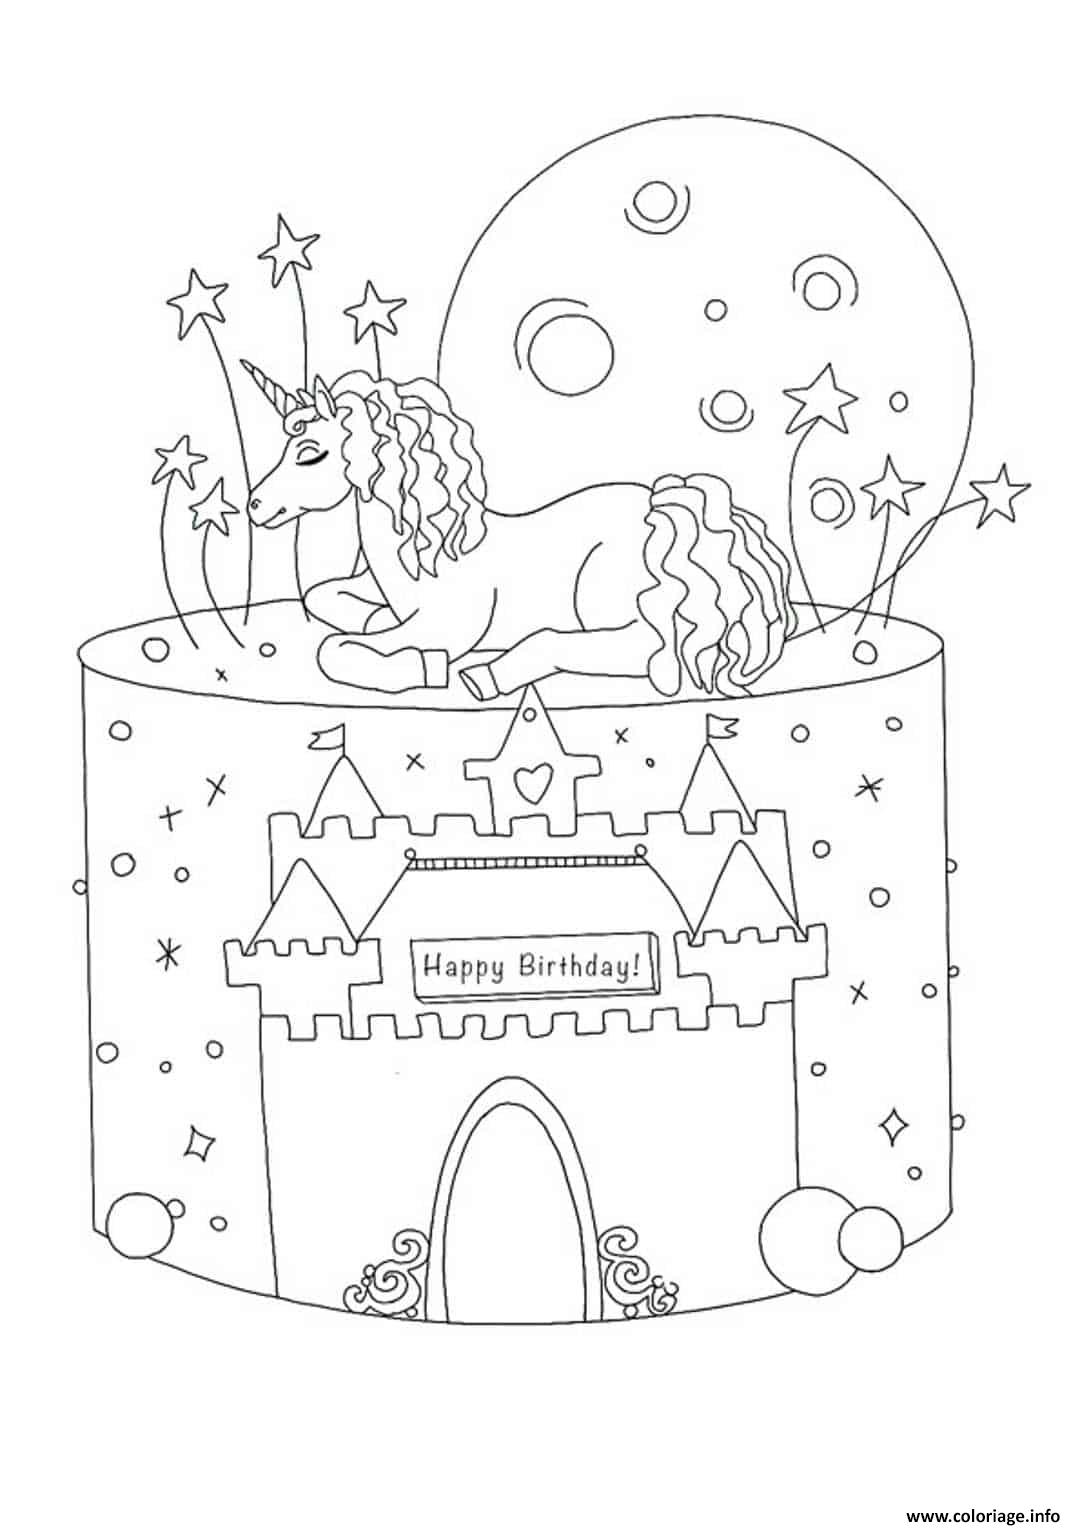 Coloriage gateau anniversaire licorne avec chateau licorne  JeColorie.com